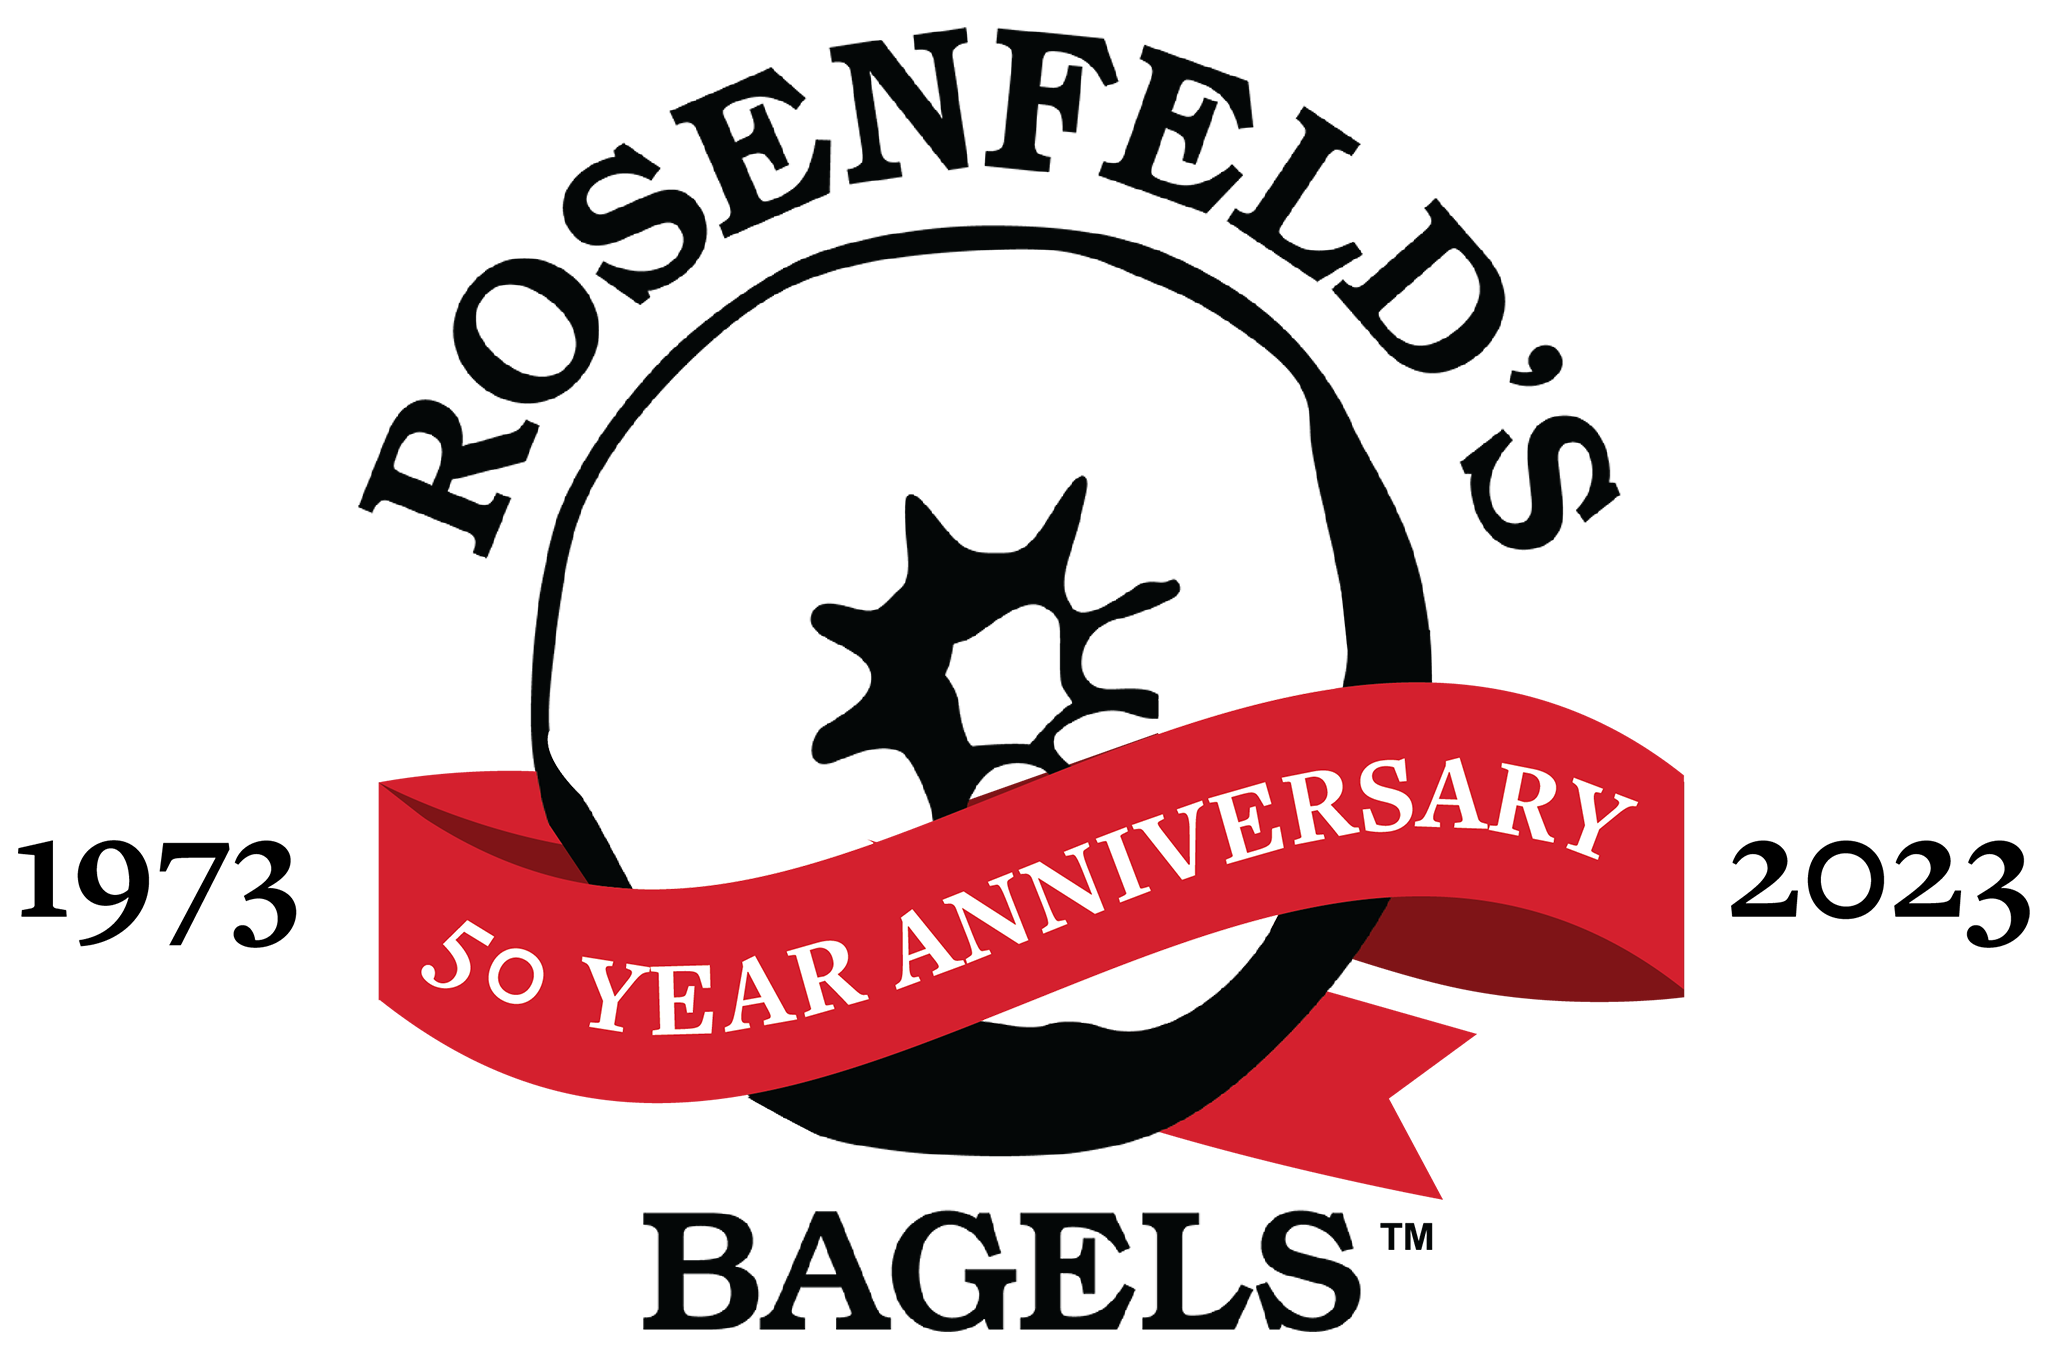 Rosenfeld's Bagels